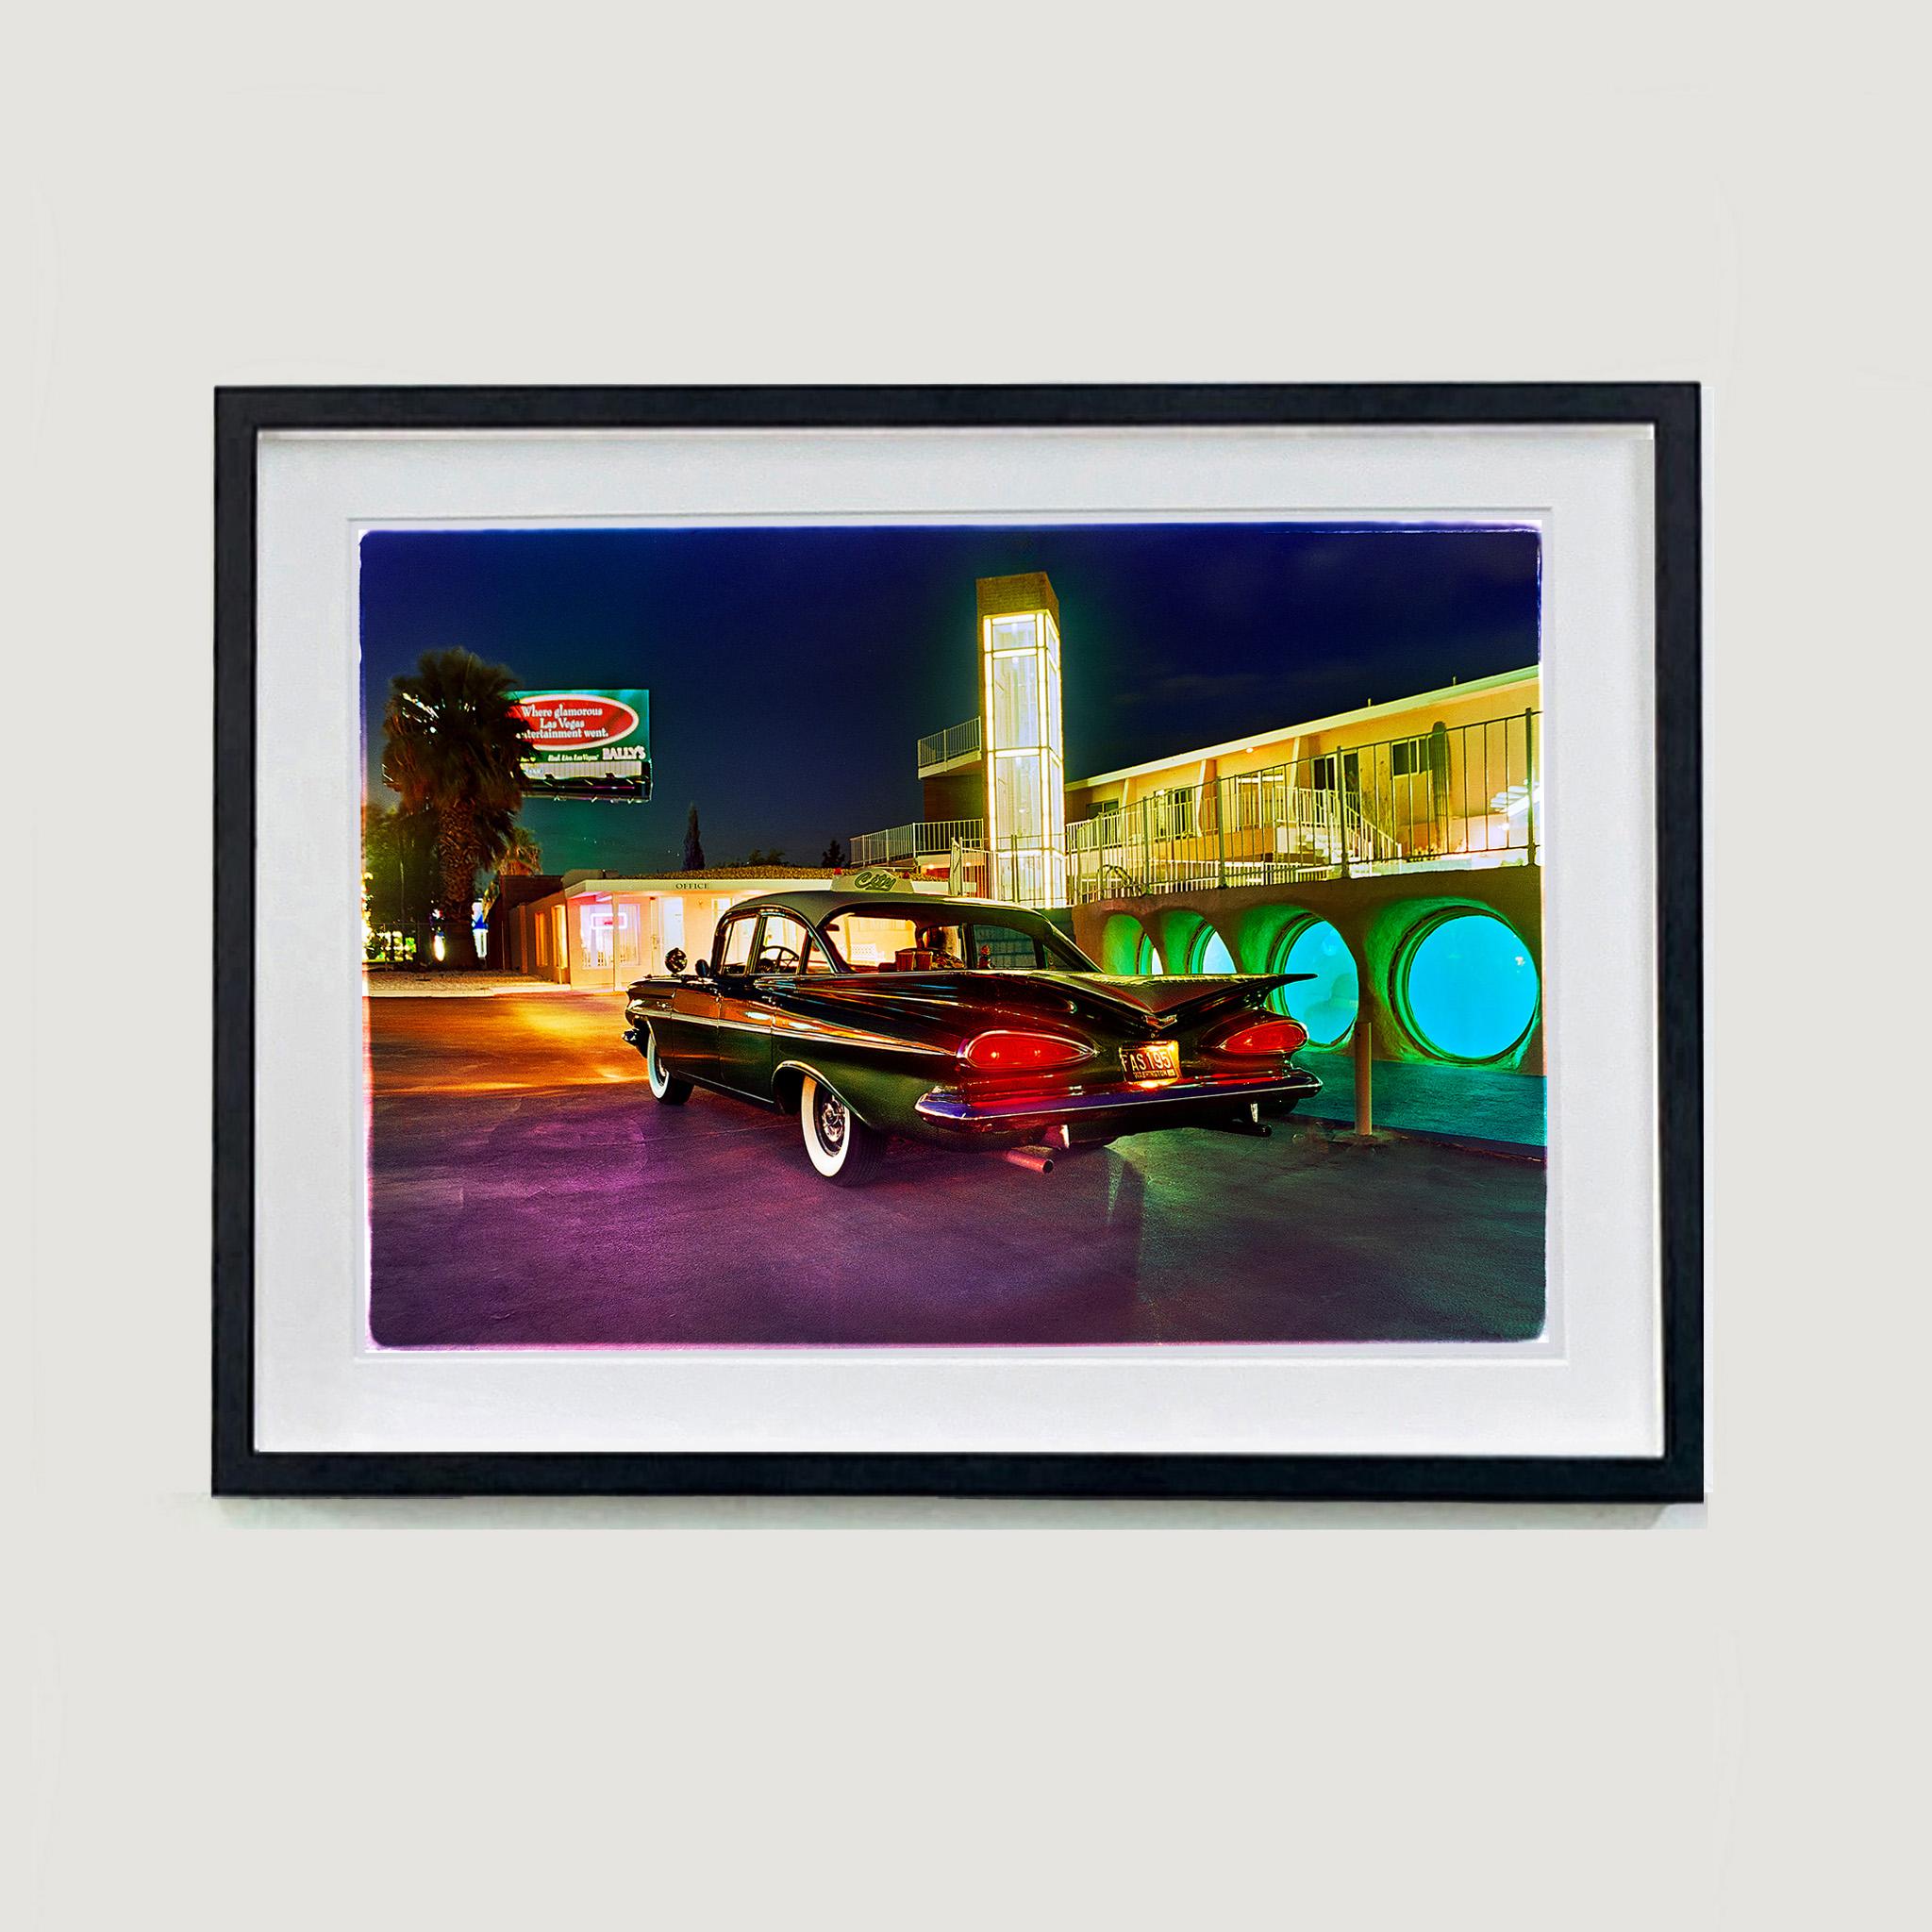 Patrick's Bel Air, Las Vegas – amerikanische Vintage-Auto-Farbfotografie im Vintage-Stil – Photograph von Richard Heeps